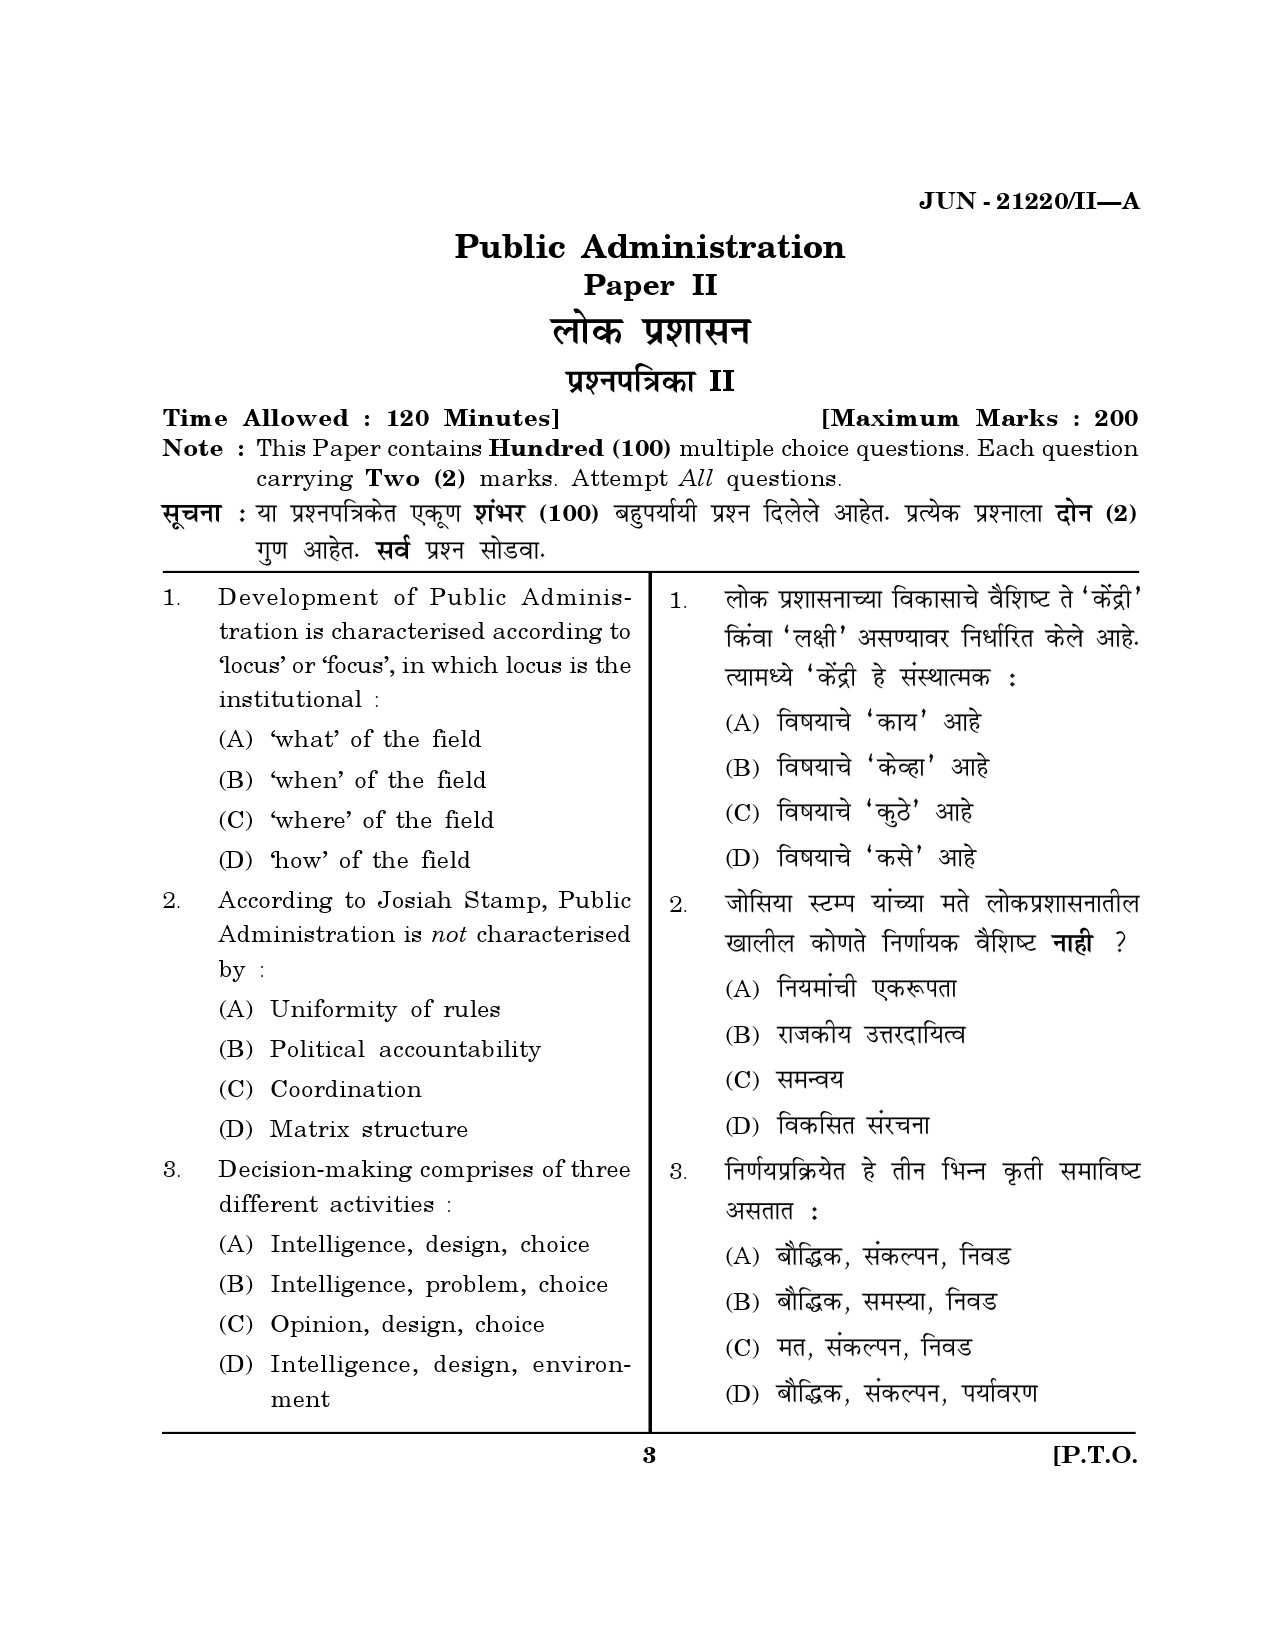 Maharashtra SET Public Administration Question Paper II June 2020 2